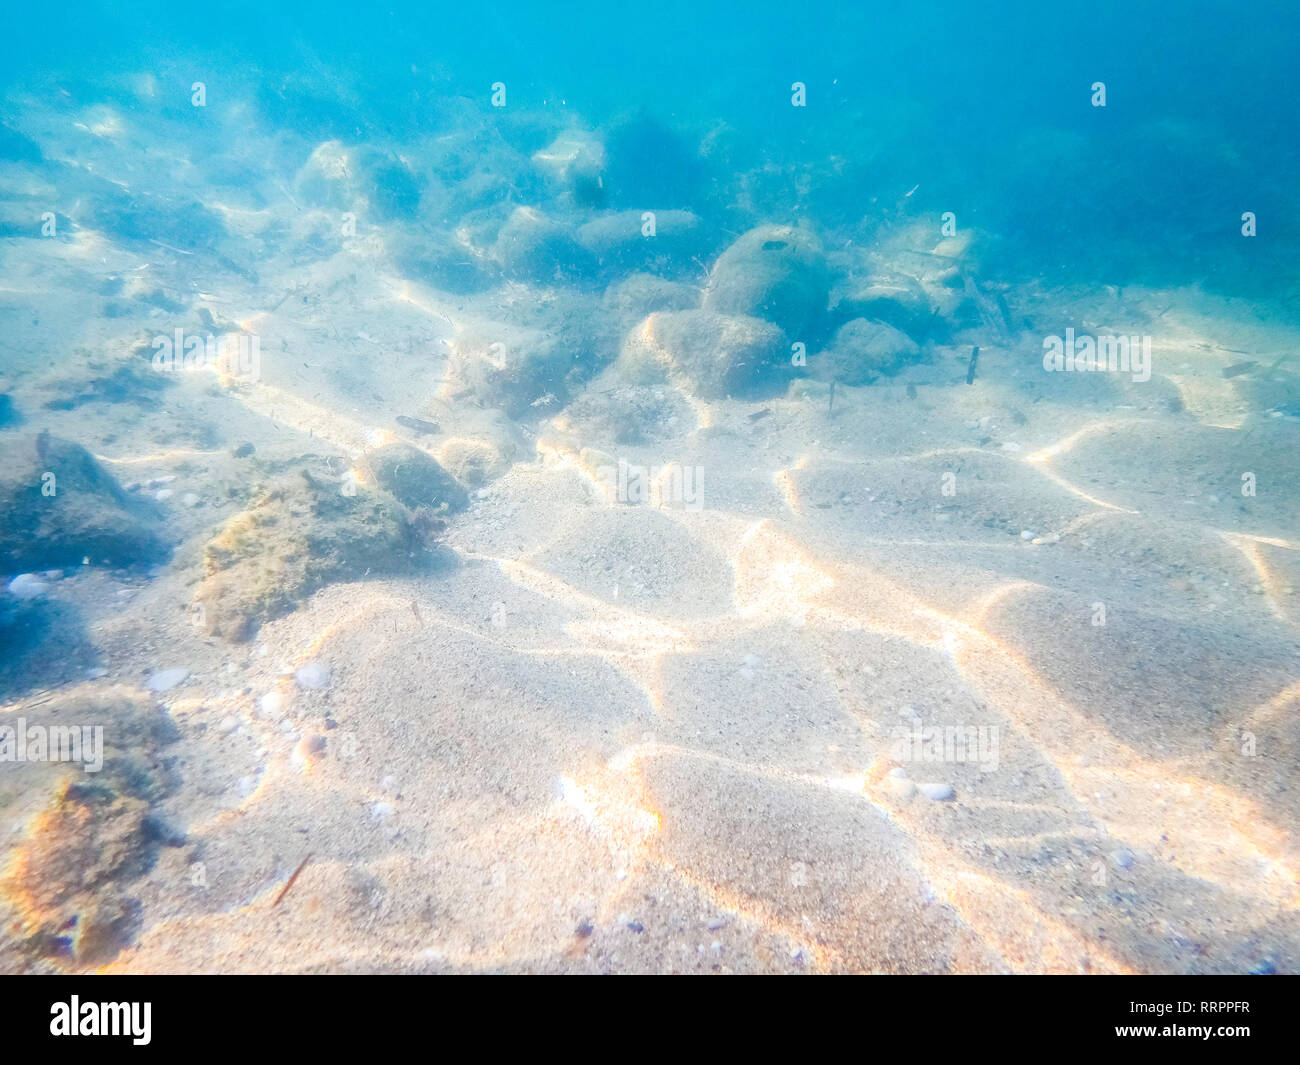 Riprese subacquee di mare piano inferiore - Immagine di ocean floor - Fotografia subacquea scattata Foto Stock